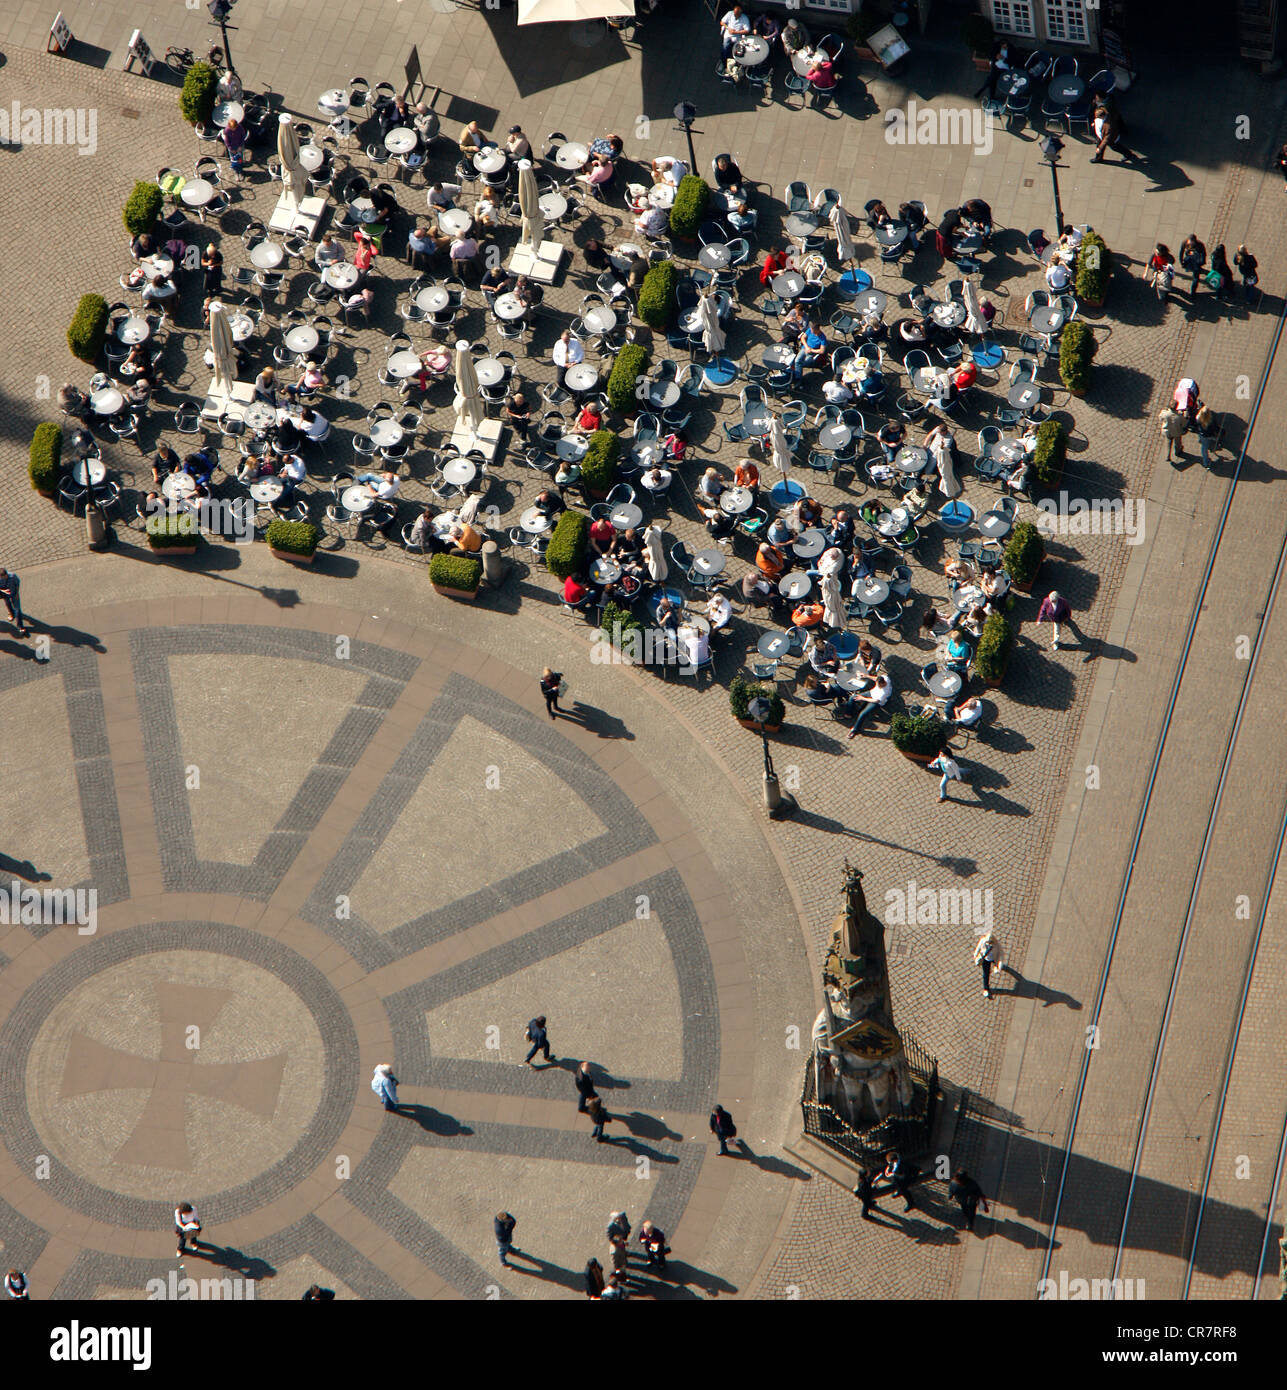 Vue aérienne de plein air, gastronomie, Am Markt, l'île de la vieille ville, Brême, Allemagne, Europe Banque D'Images